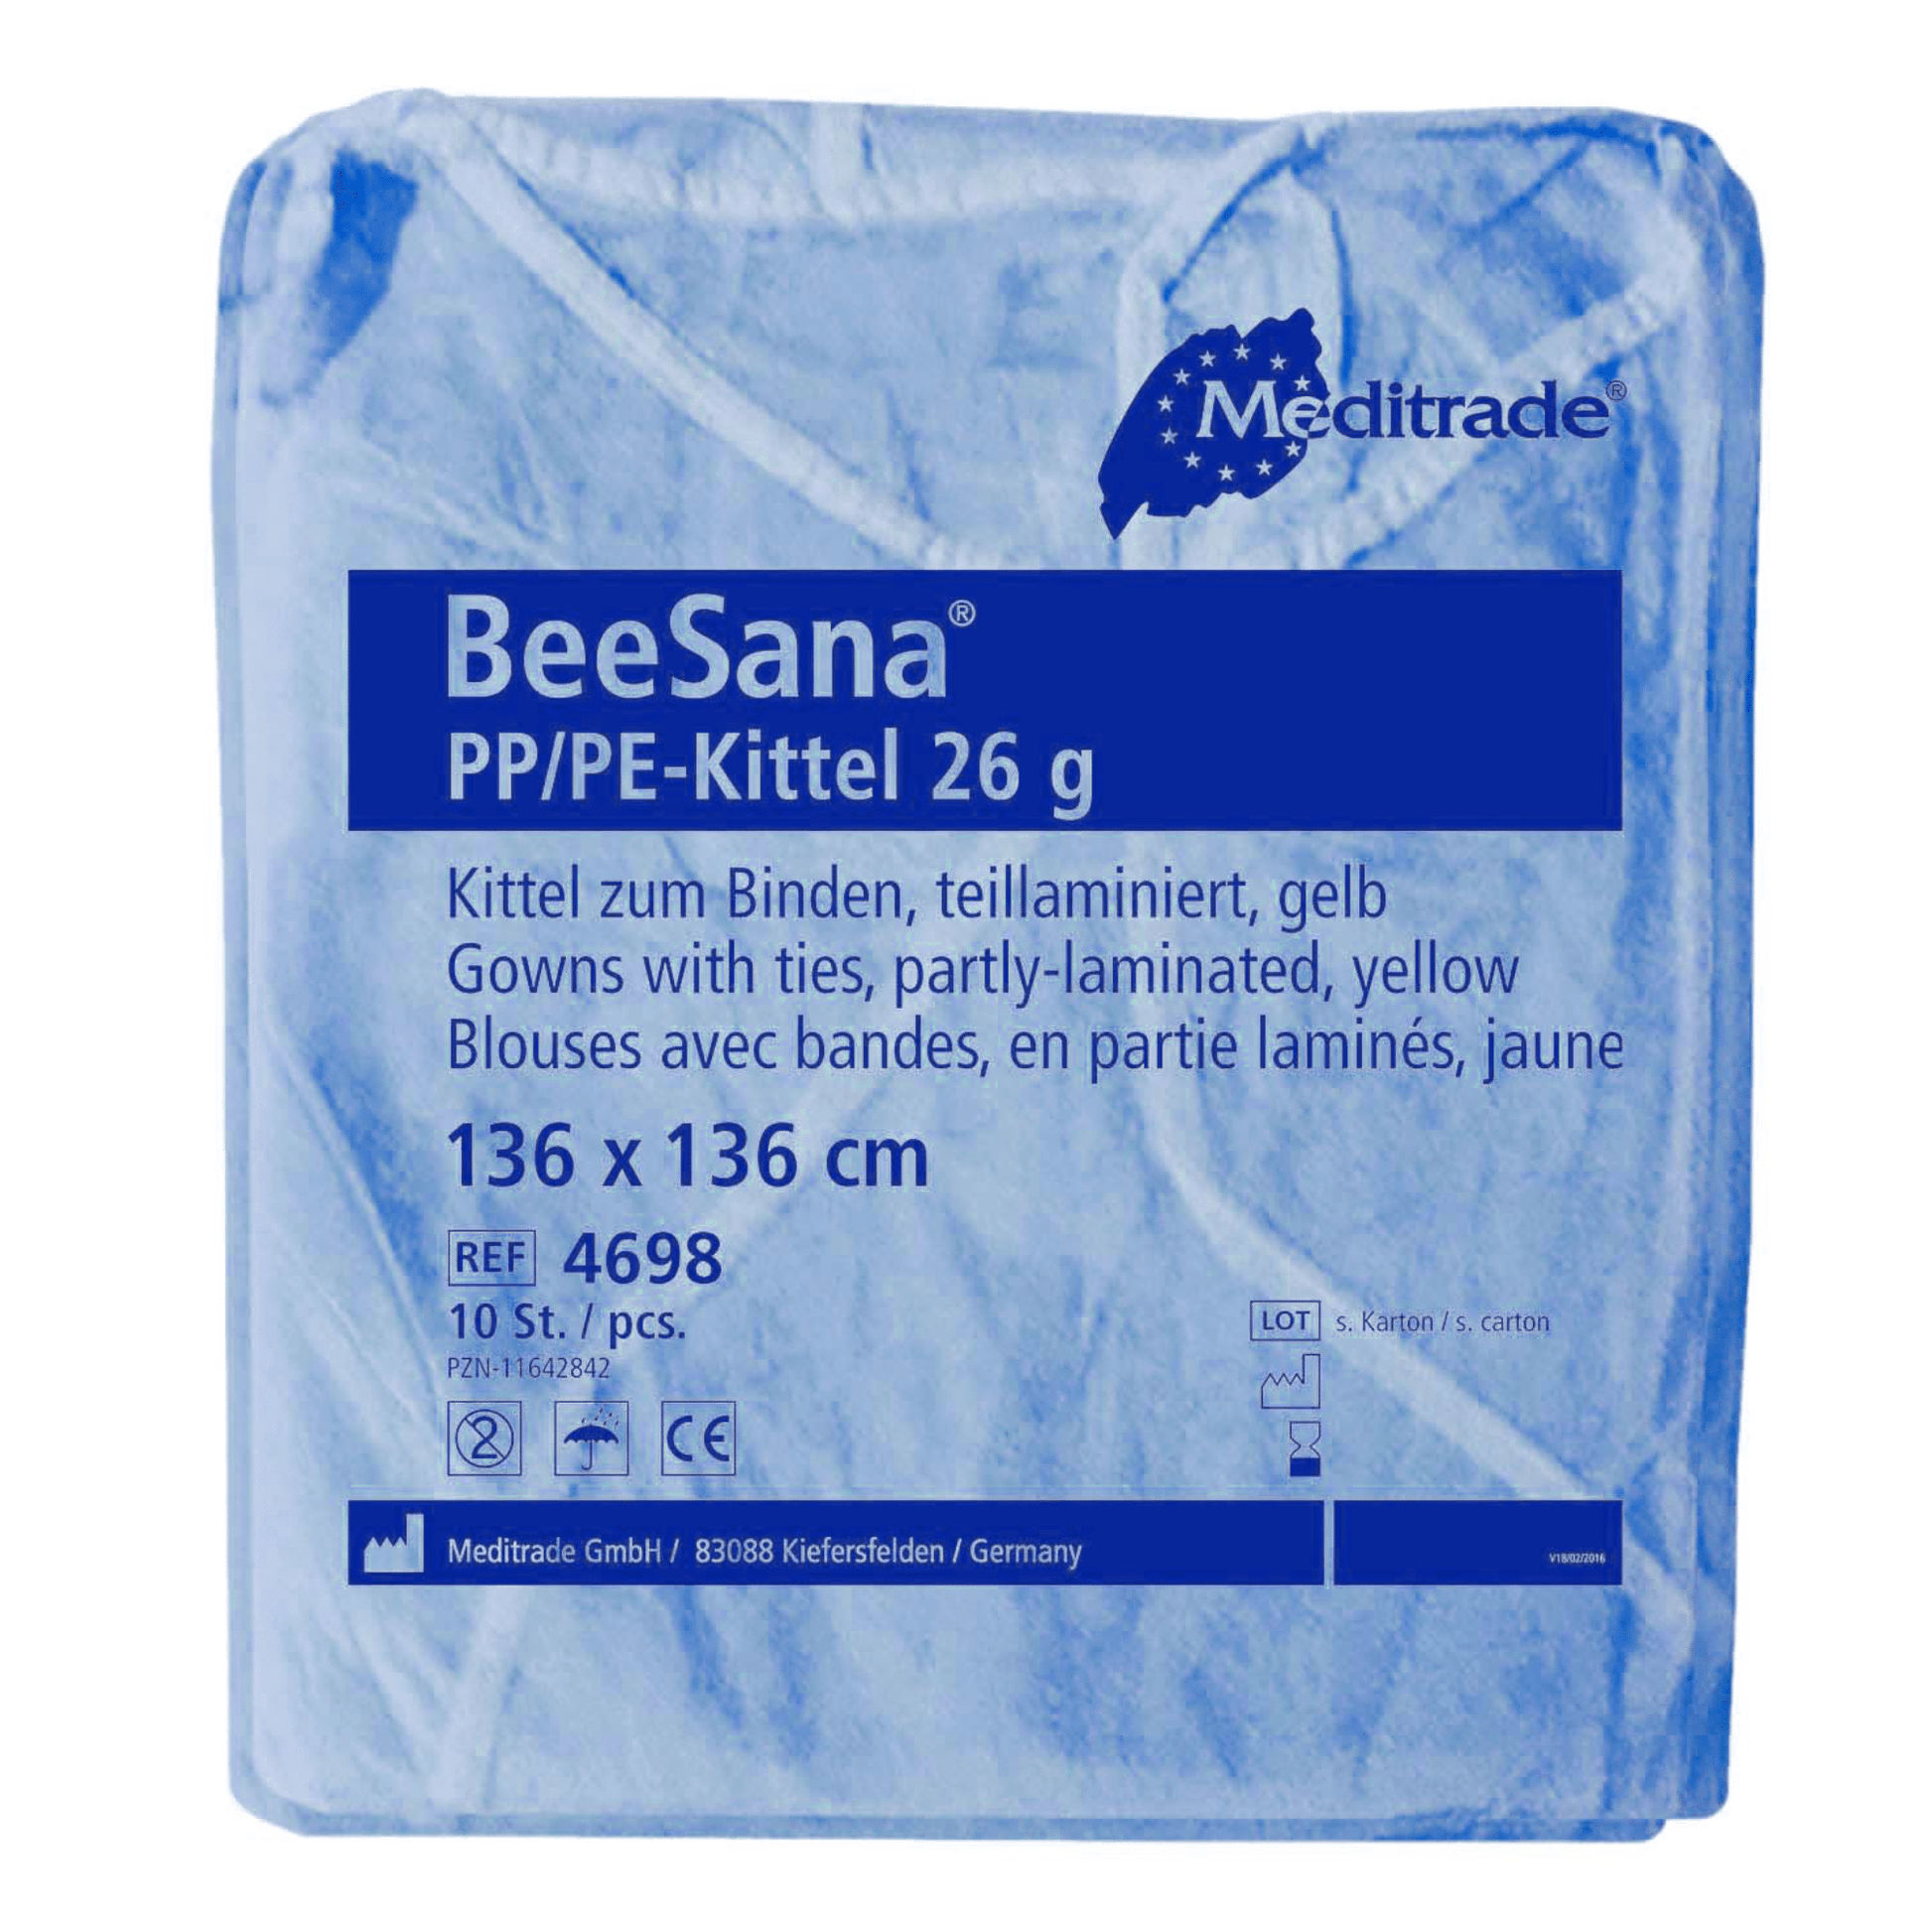 Meditrade Beesana® PP / PE-Kittel 26G, 10 pack